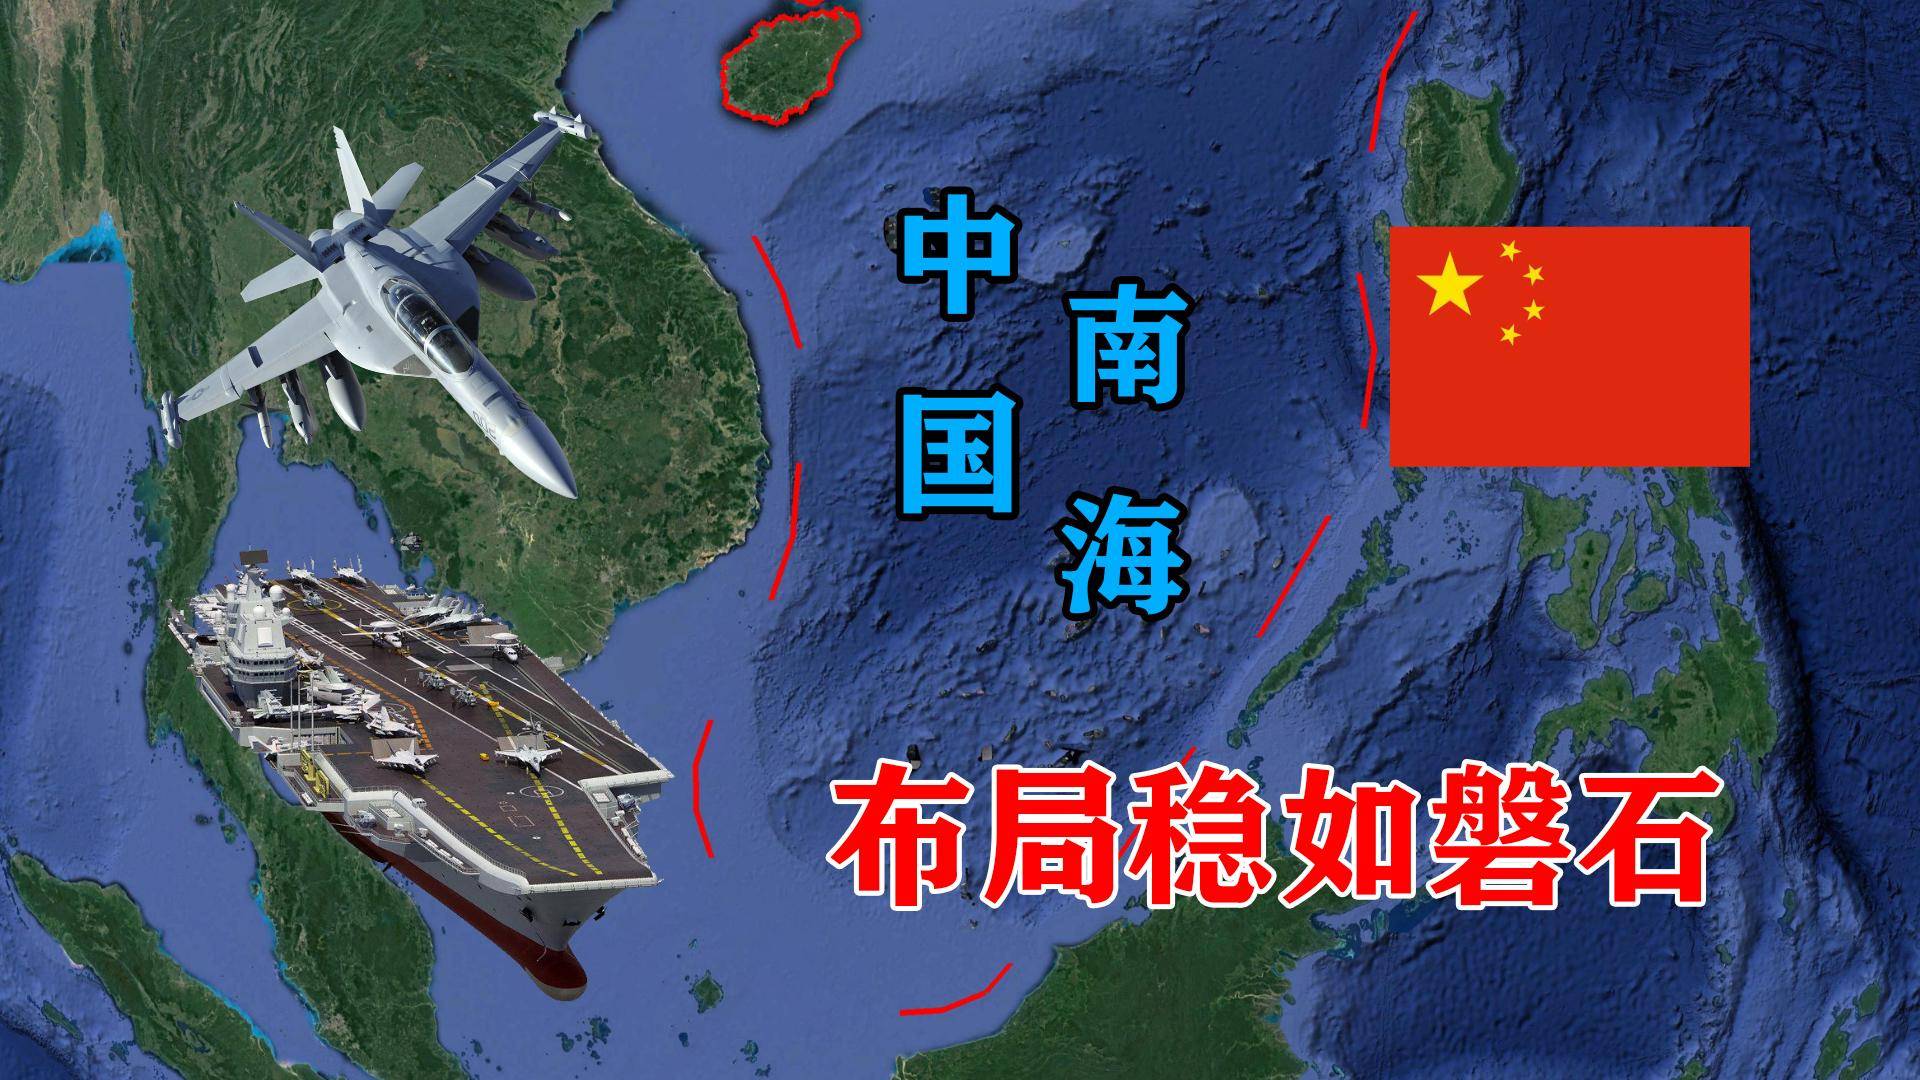 首先,中国填海造岛的行动能够有效地扩大其在南海的领土范围,这对于